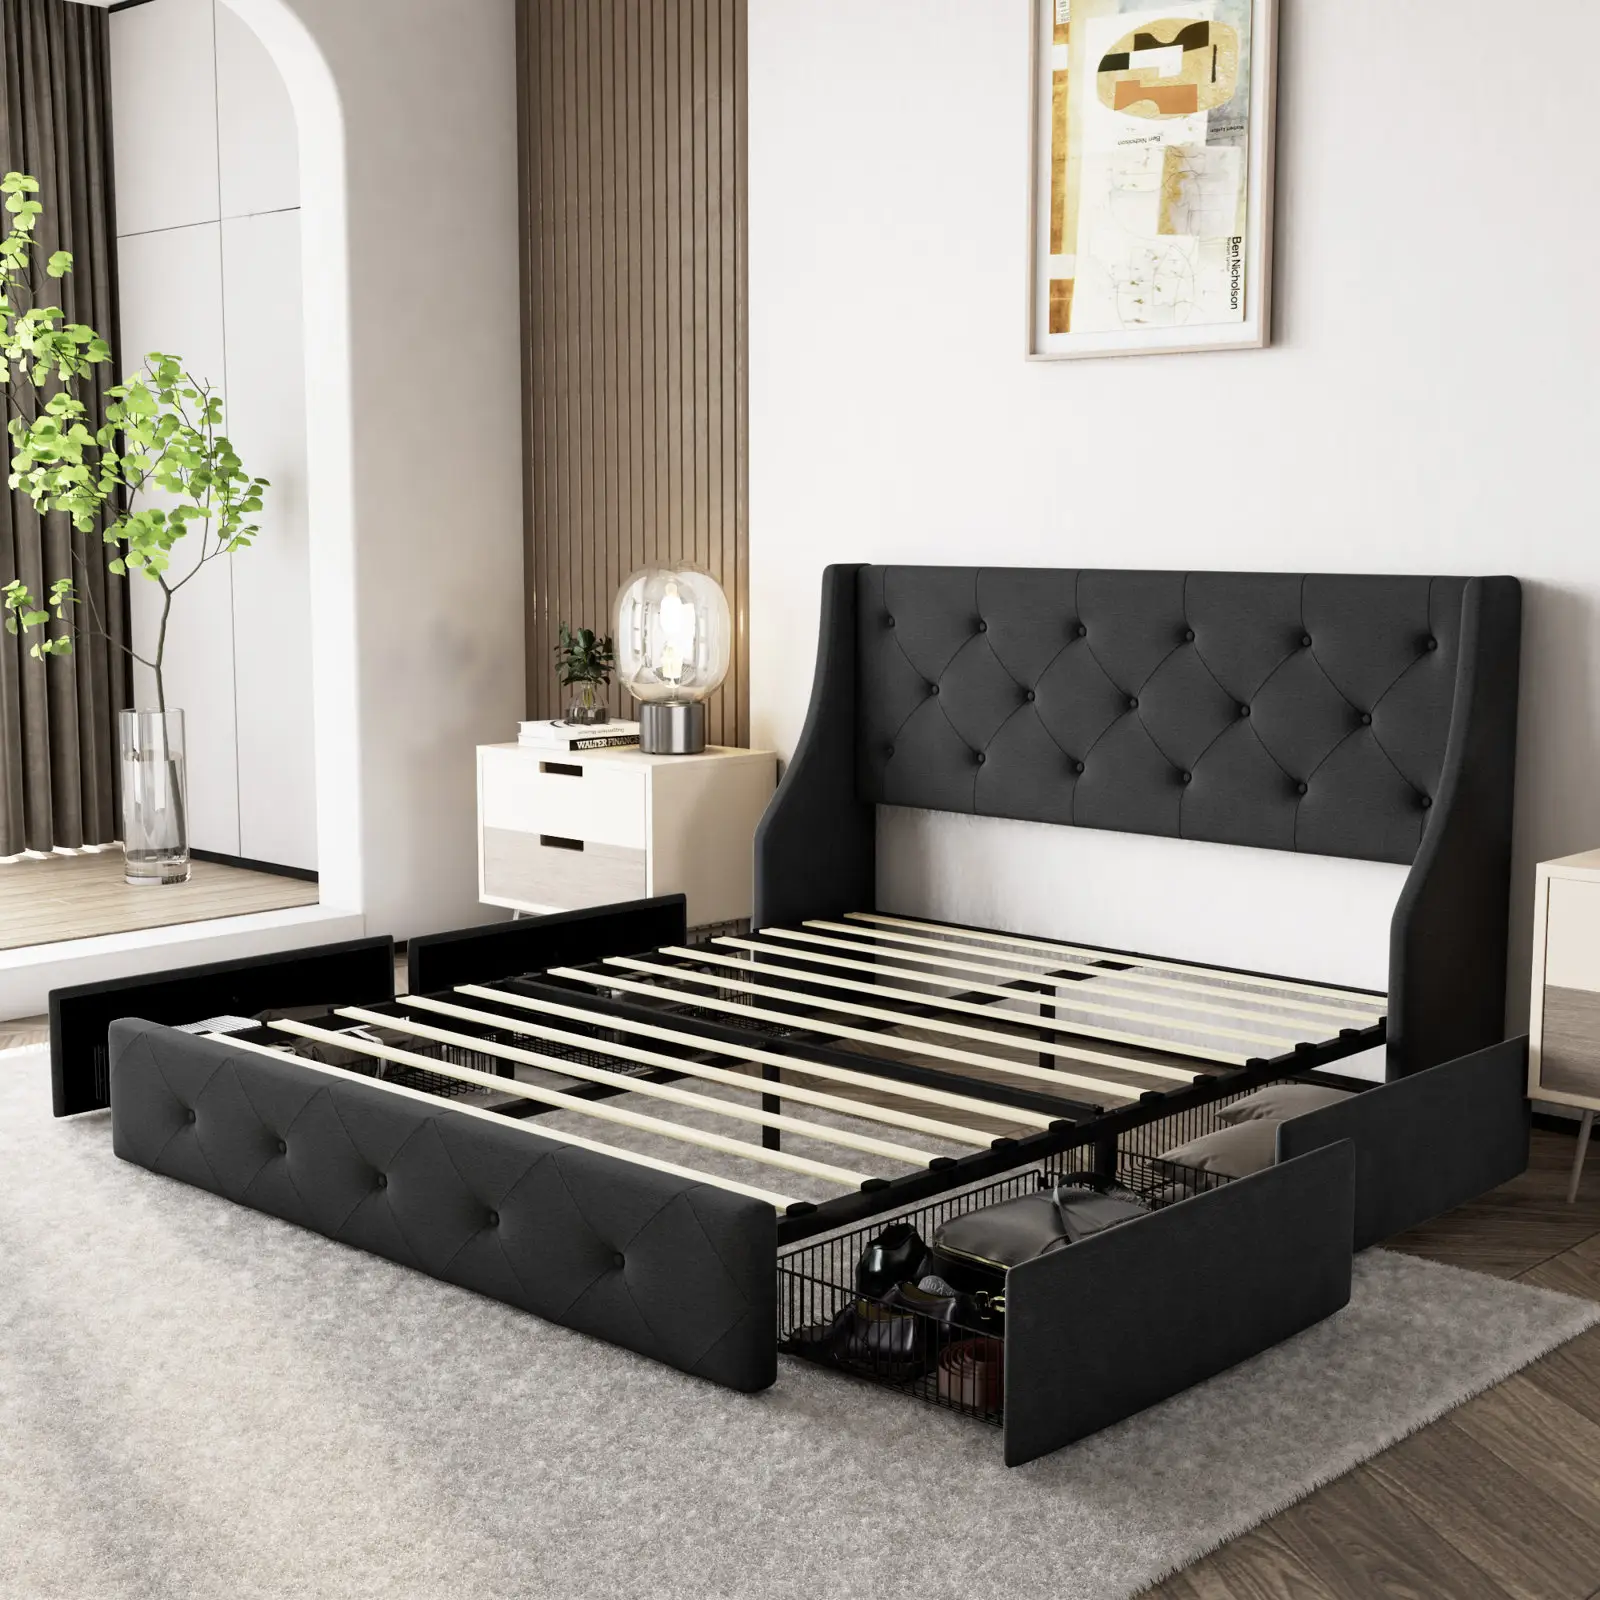 سرير مخملي كبير الحجم محكم الحجم ياباني من Kainice سرير مخملي مع مكان للتخزين موفر في المساحة ومتنقل